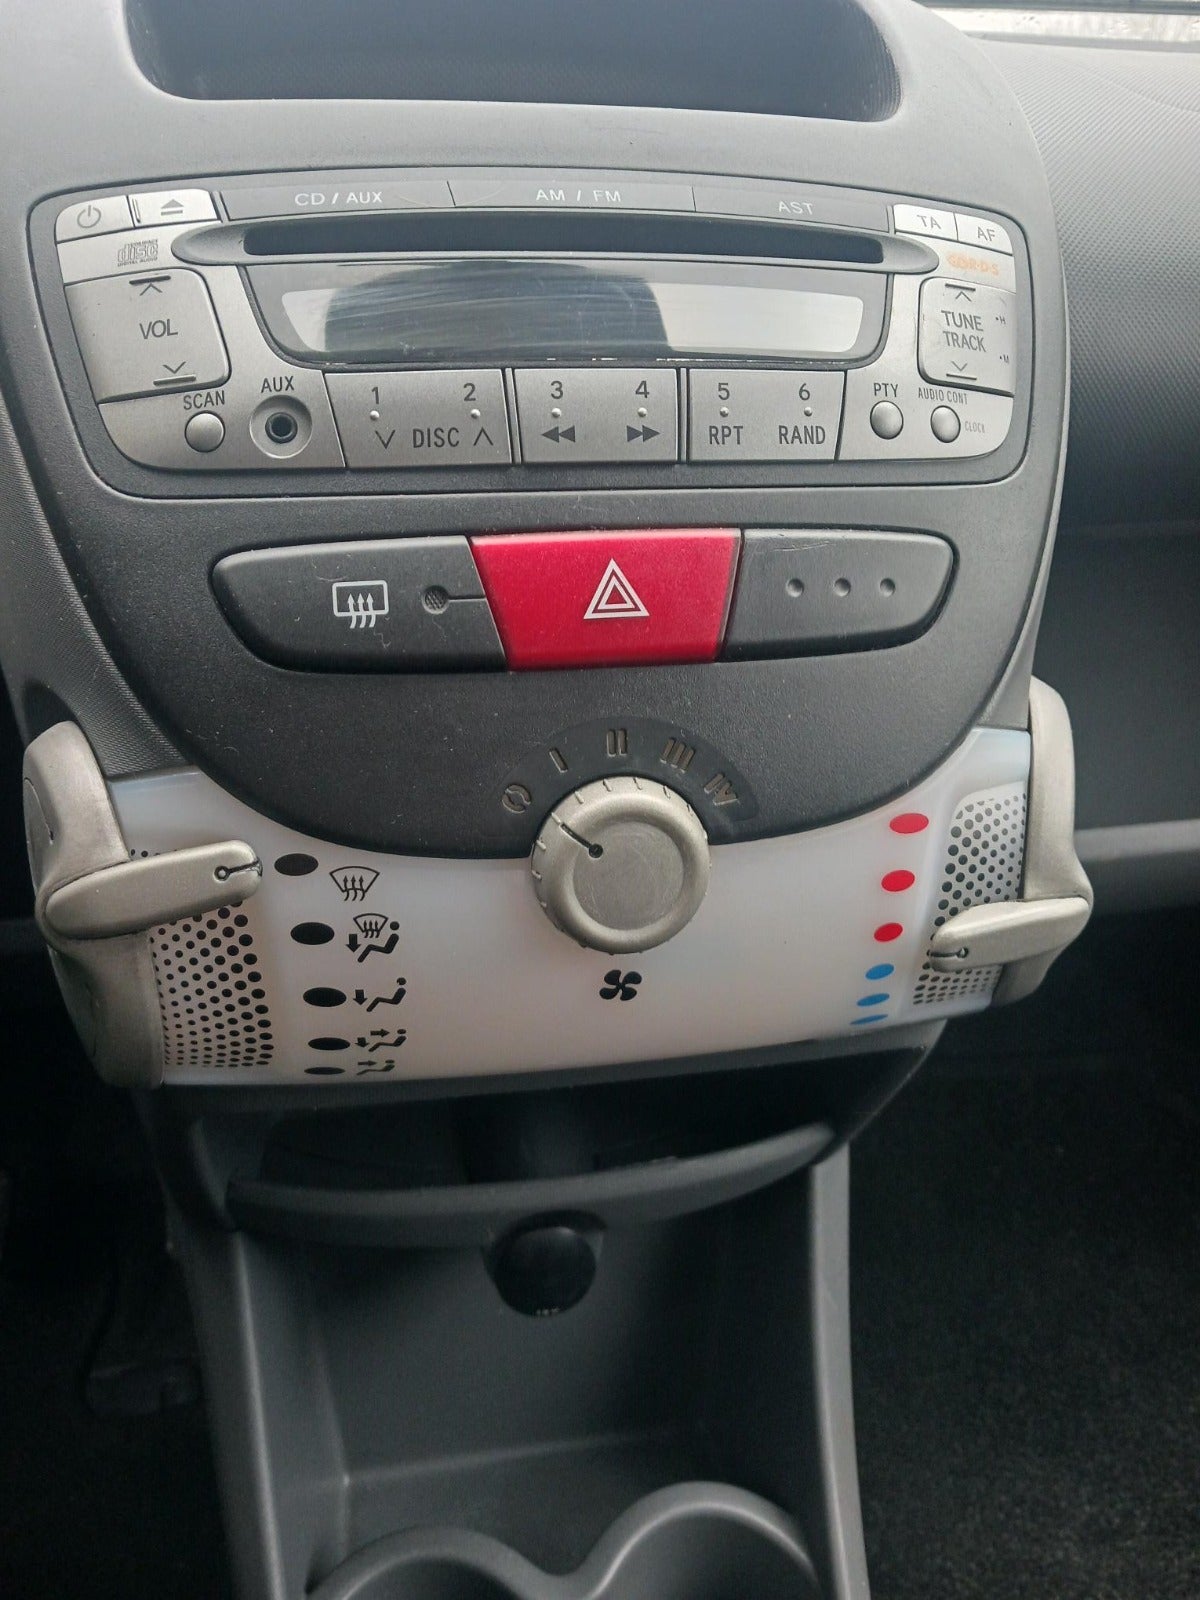 Toyota Aygo 1,0 Benzin modelår 2010 km 198000 nysynet ABS